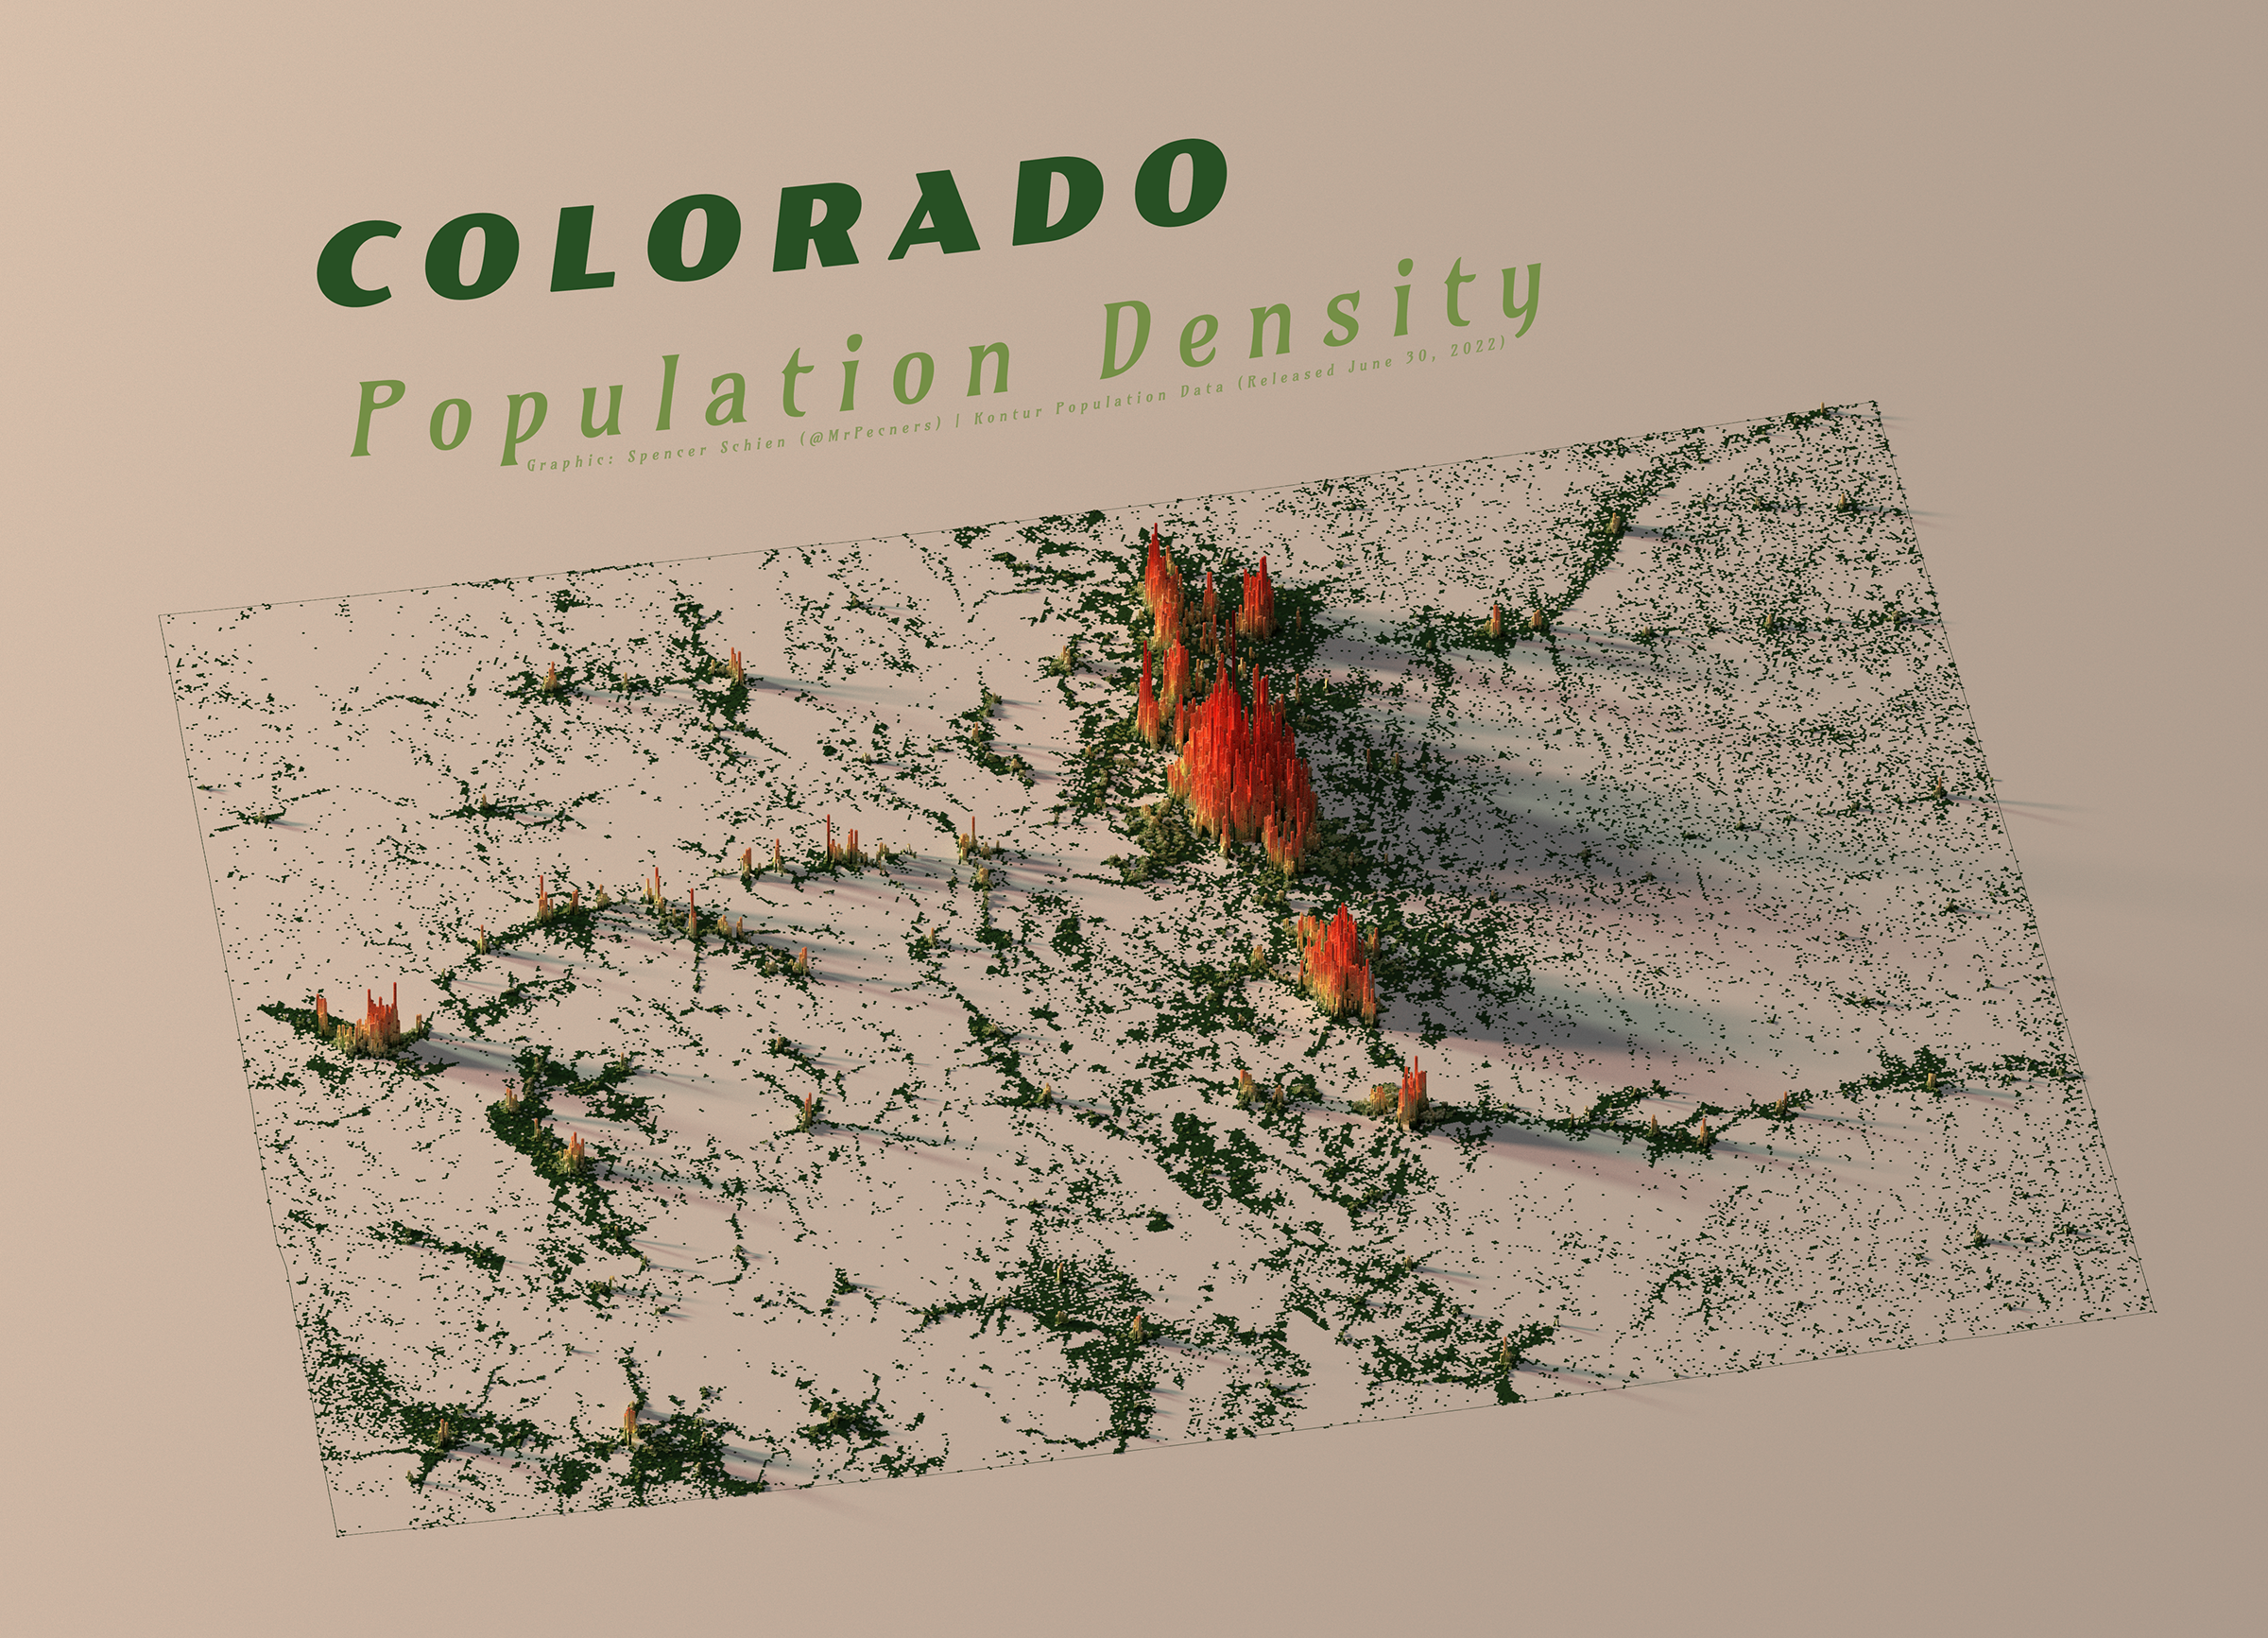 Colorado-Population-Density-2400.png